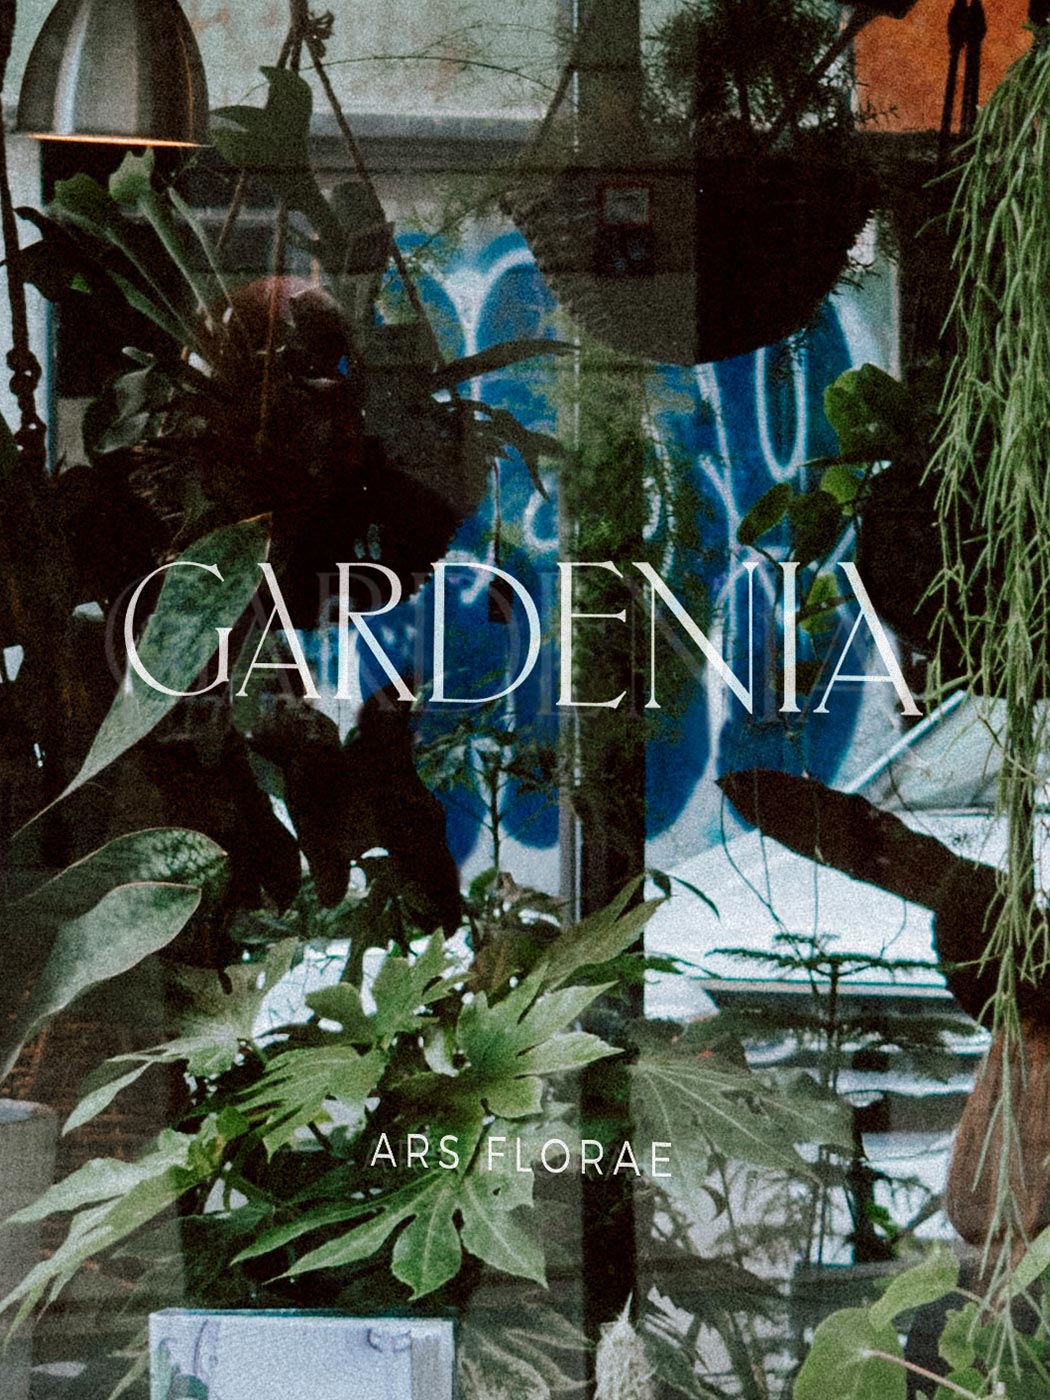 Studio-Hrastar-Gardenia-Window